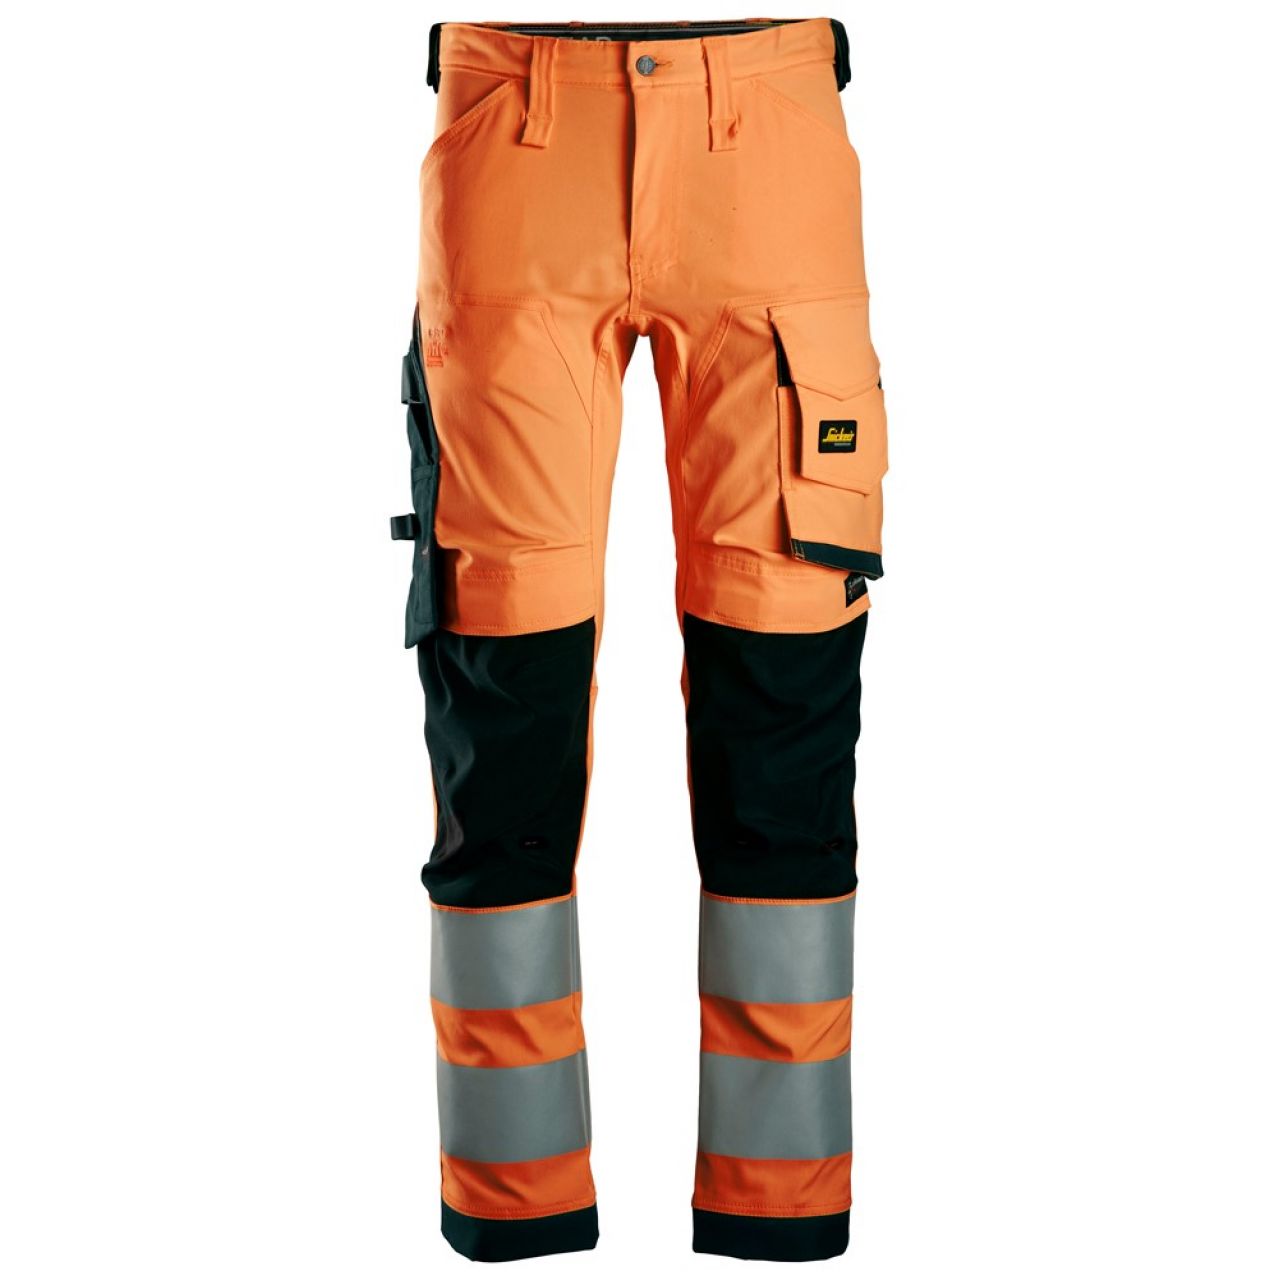 6343 Pantalones largos de trabajo elásticos de alta visibilidad clase 2 naranja-negro talla 60